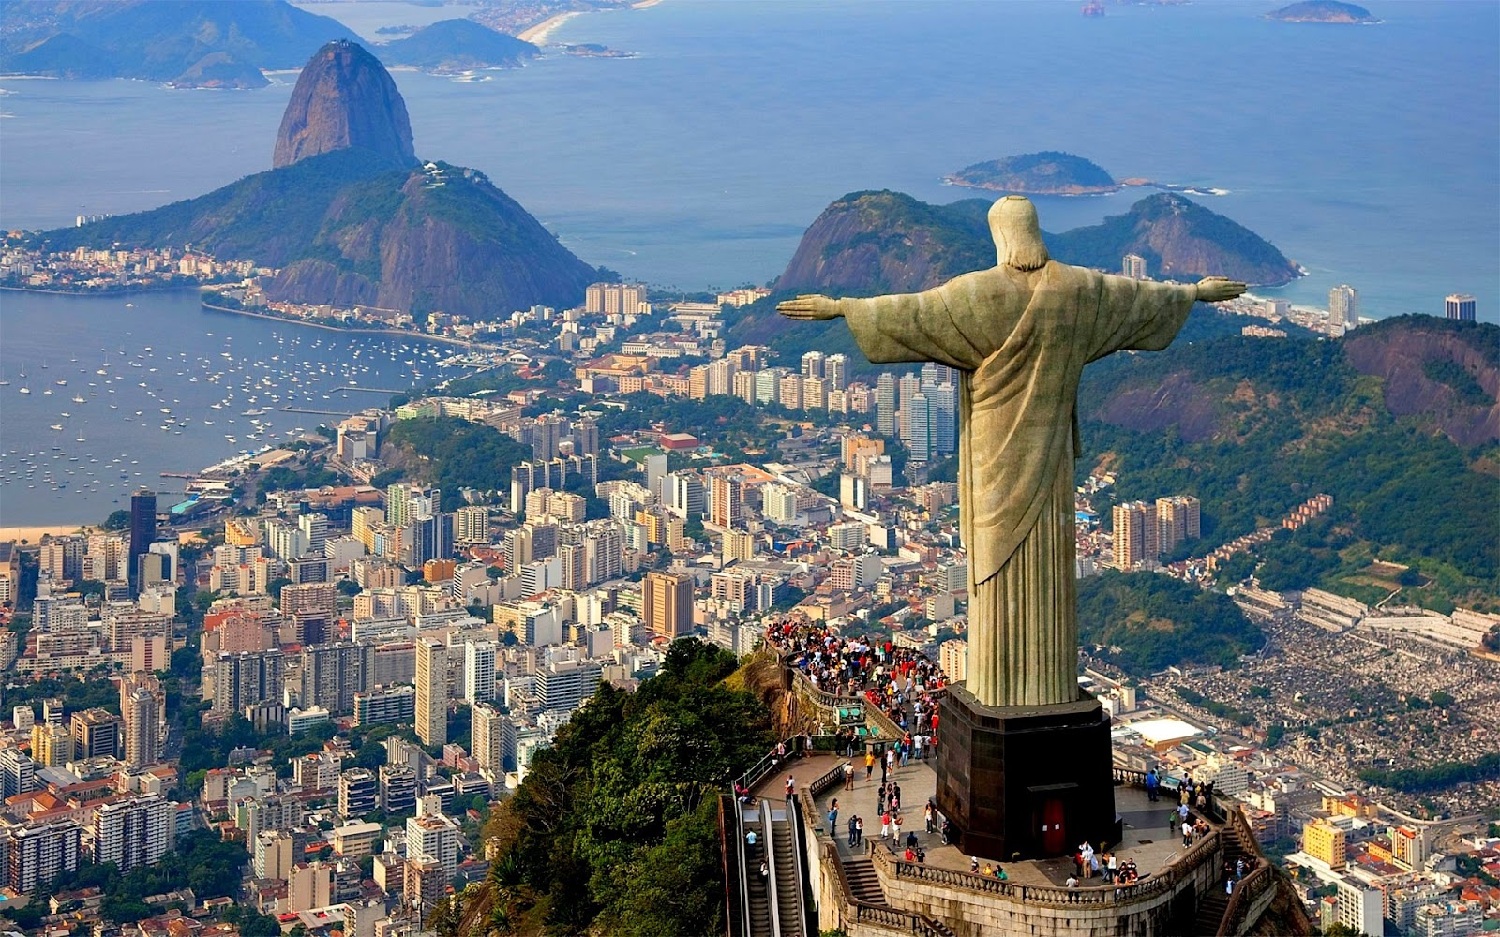 Resmi adı Brezilya Federal Cumhuriyeti olan Güney Amerika ülkesi Brezilya, kıtanın neredeyse tüm
merkezini ve kuzeydoğu bölgesini kapsayan en büyük ve en kalabalık ülkedir. 